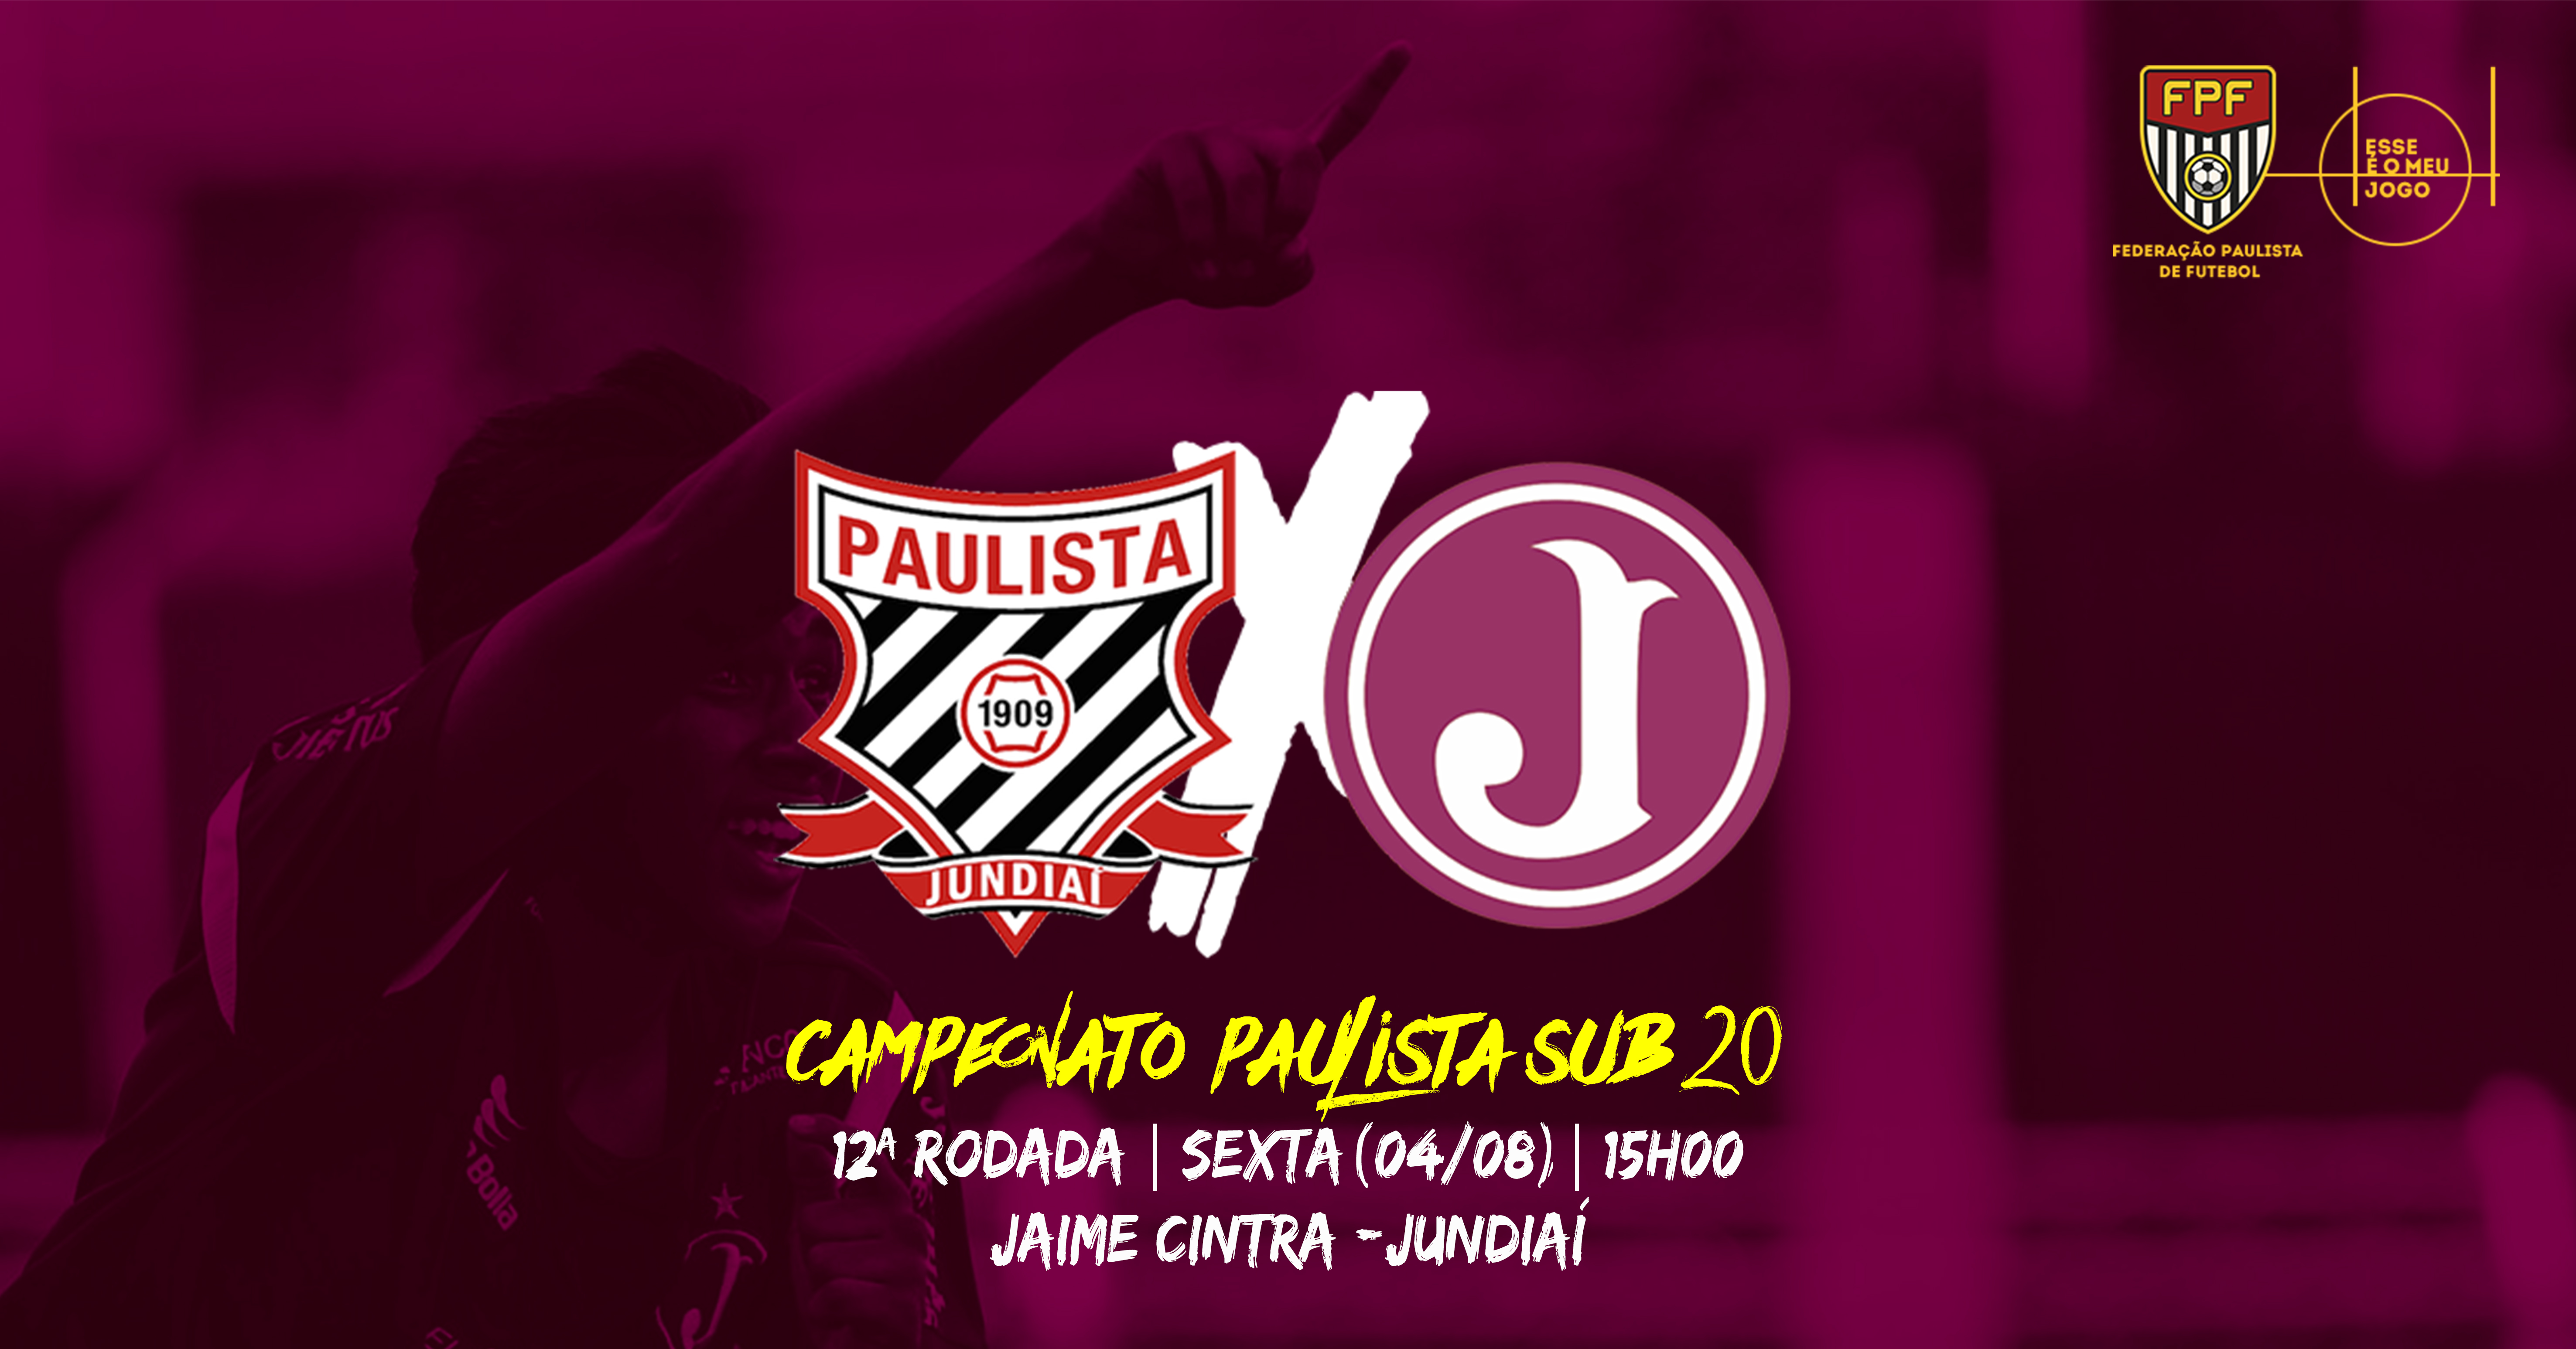 Paulista x Juventus - 12ª rodada do Campeonato Paulista Sub 20